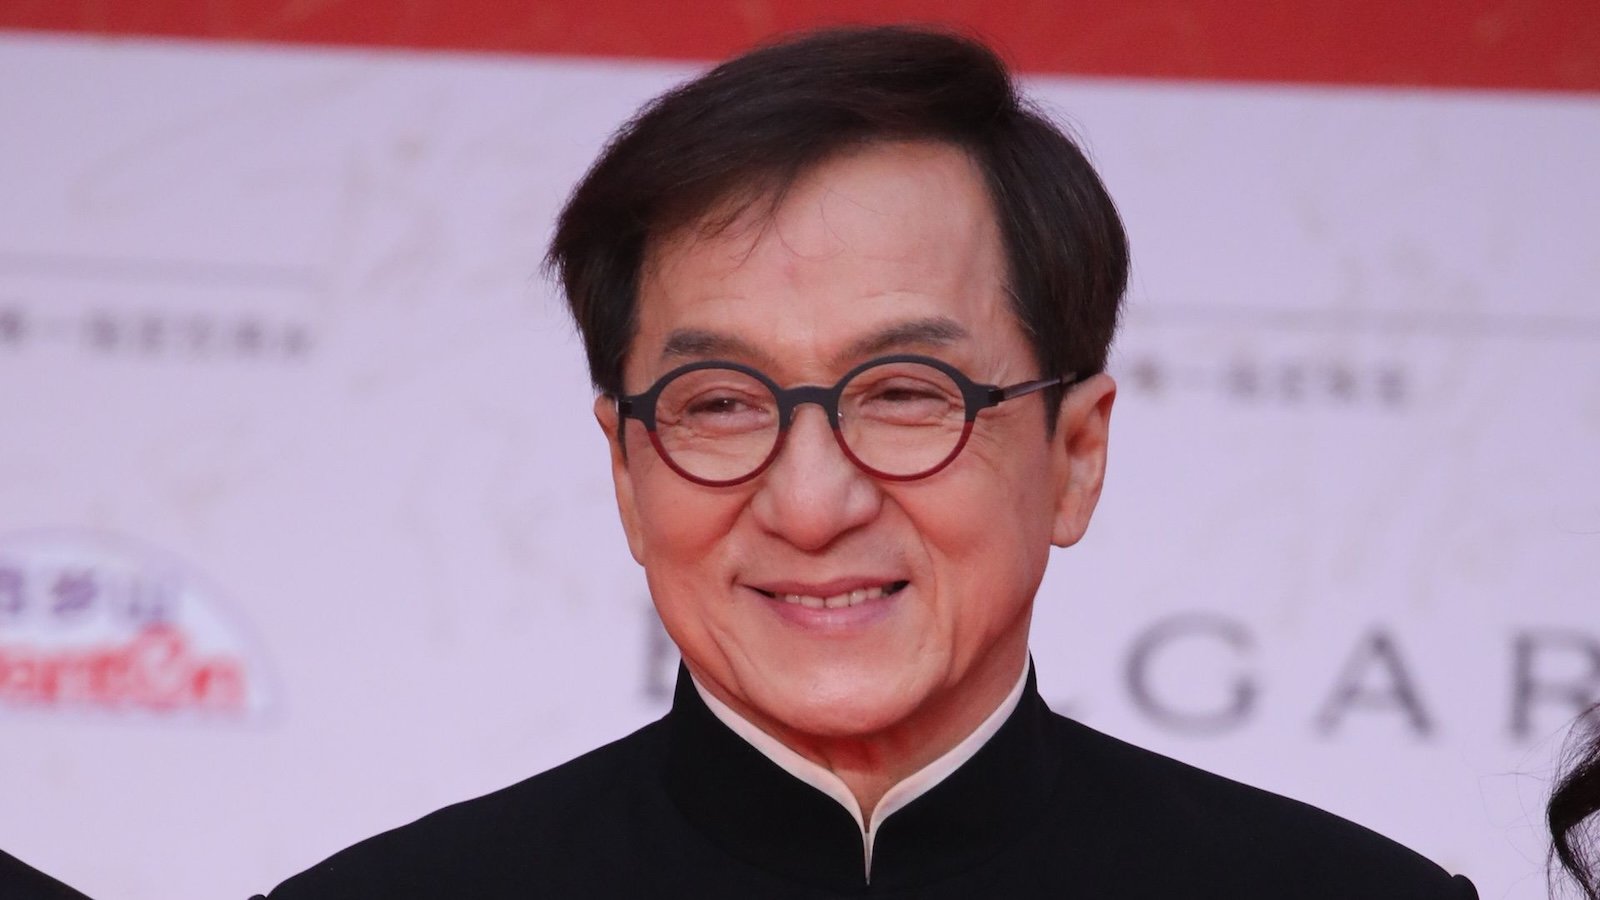 Jackie Chan rassicura i fan: 'Le foto in cui sembro invecchiato? È solo il mio prossimo ruolo'